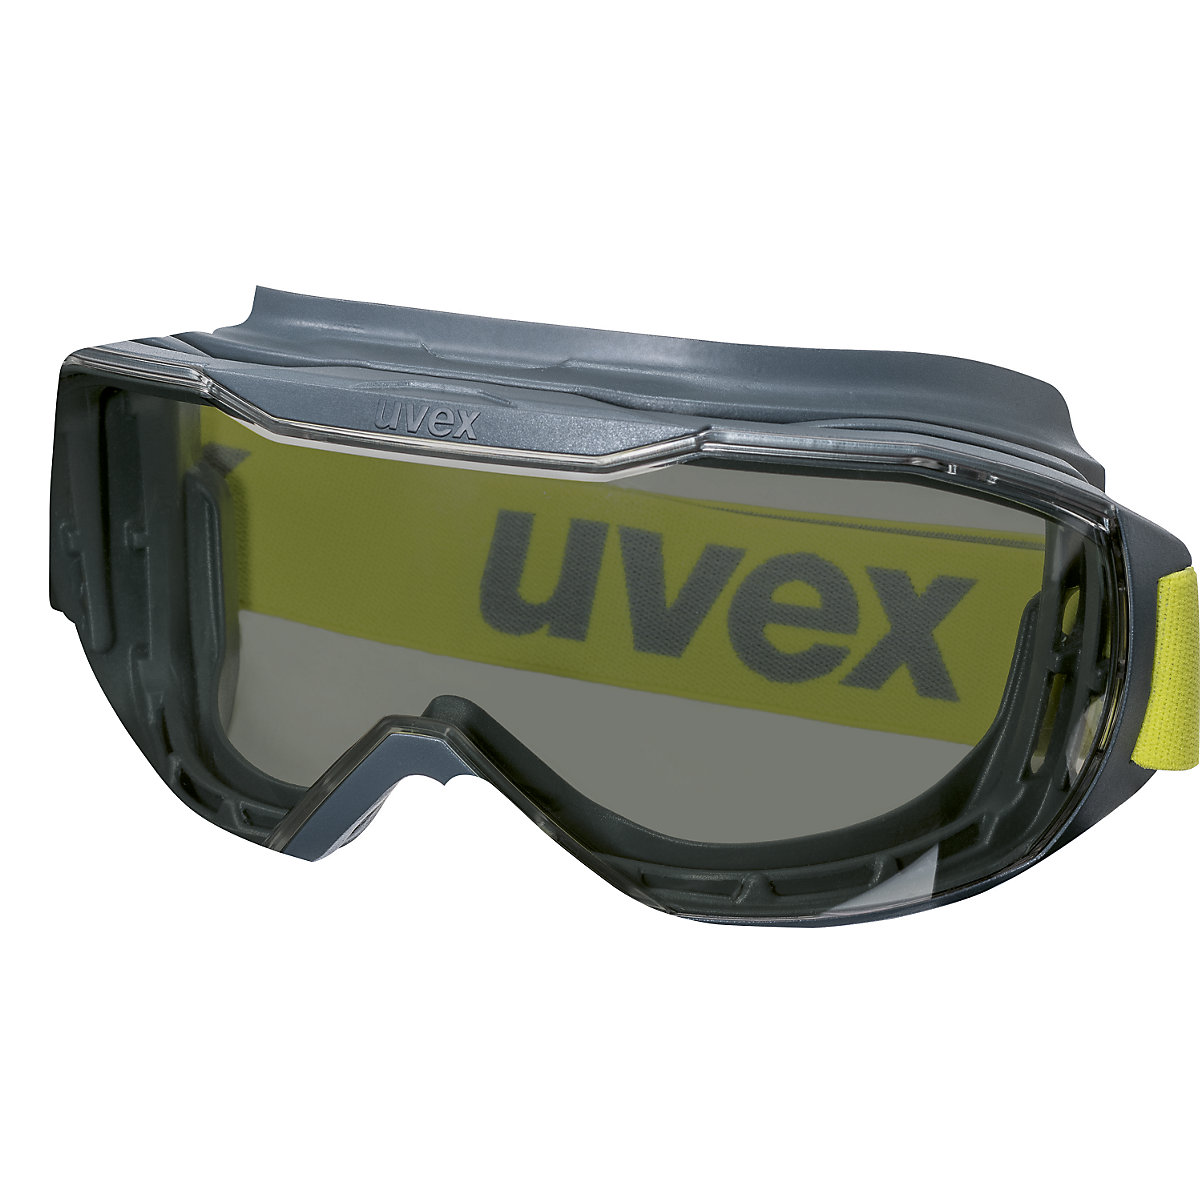 Velika zaščitna očala megasonic – Uvex